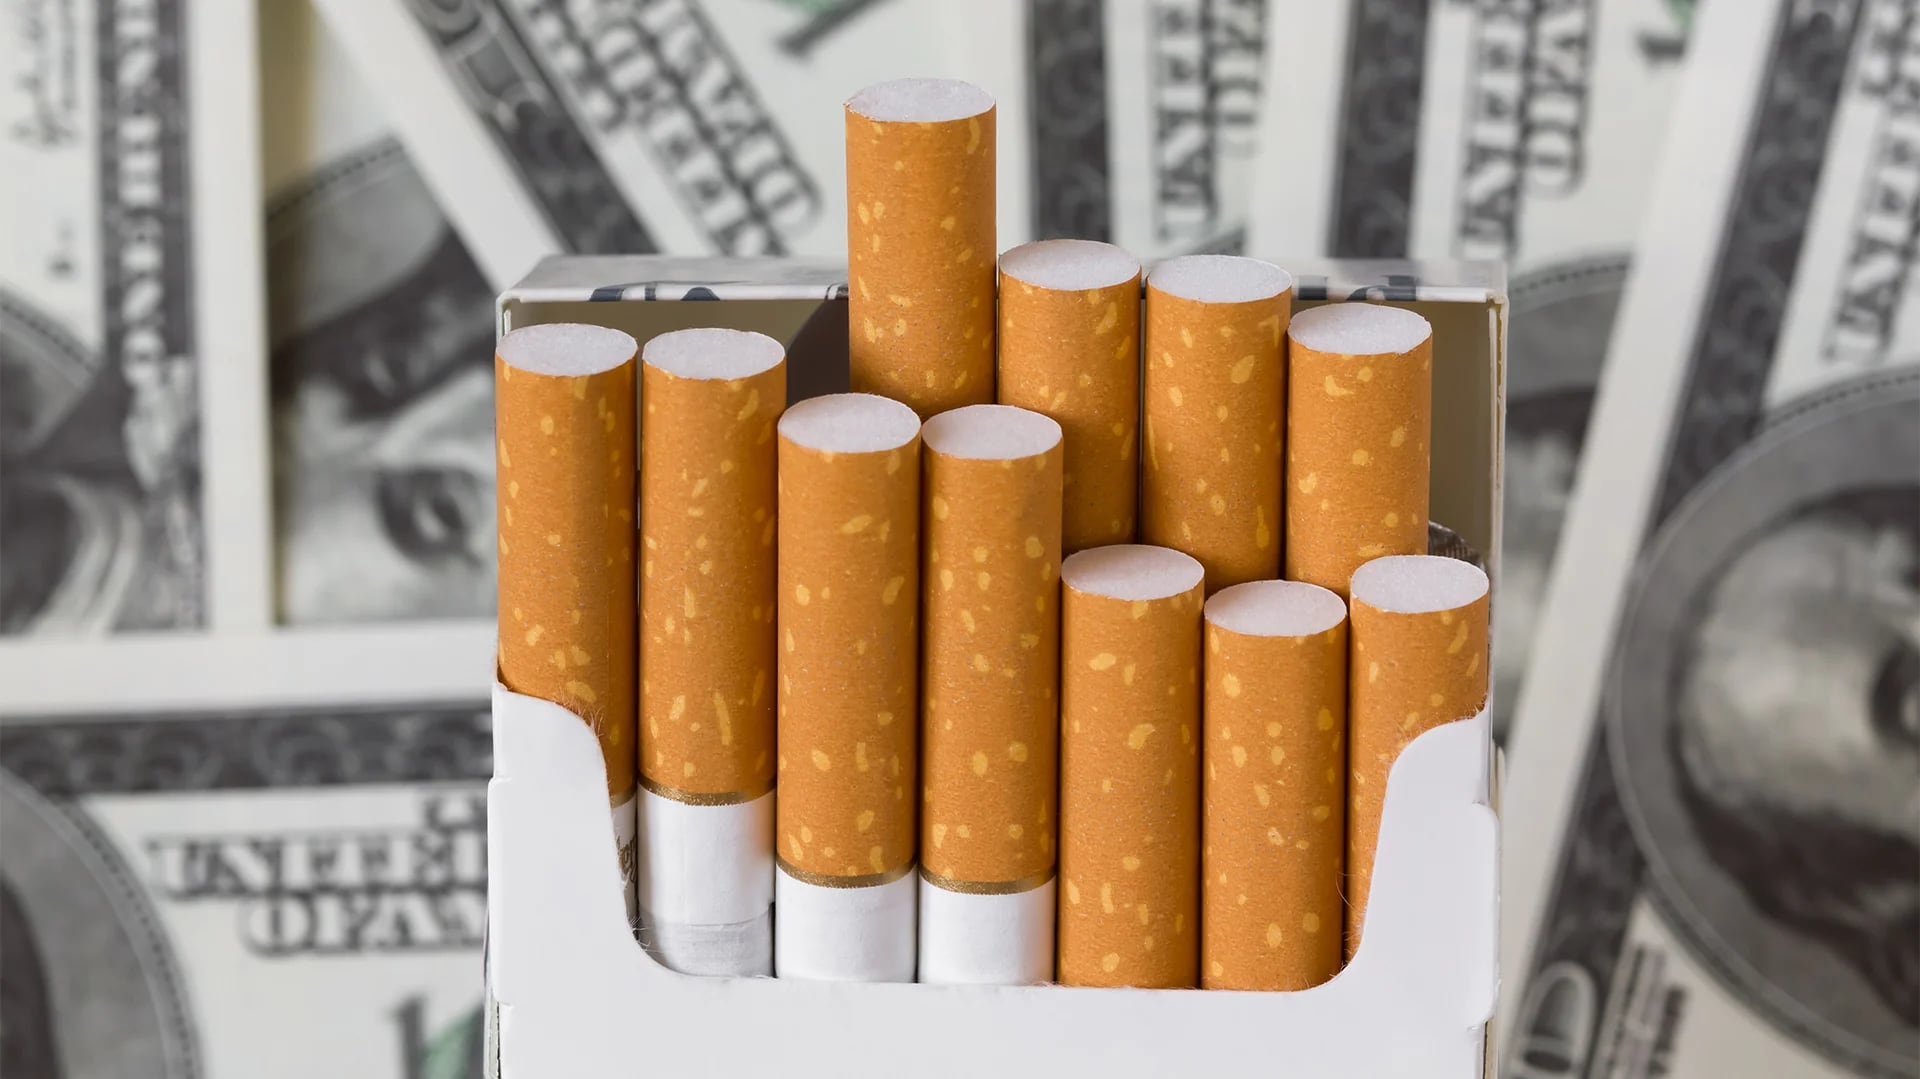 Millones de dólares en gastos de salud ocasiona el cigarrillo (iStock)